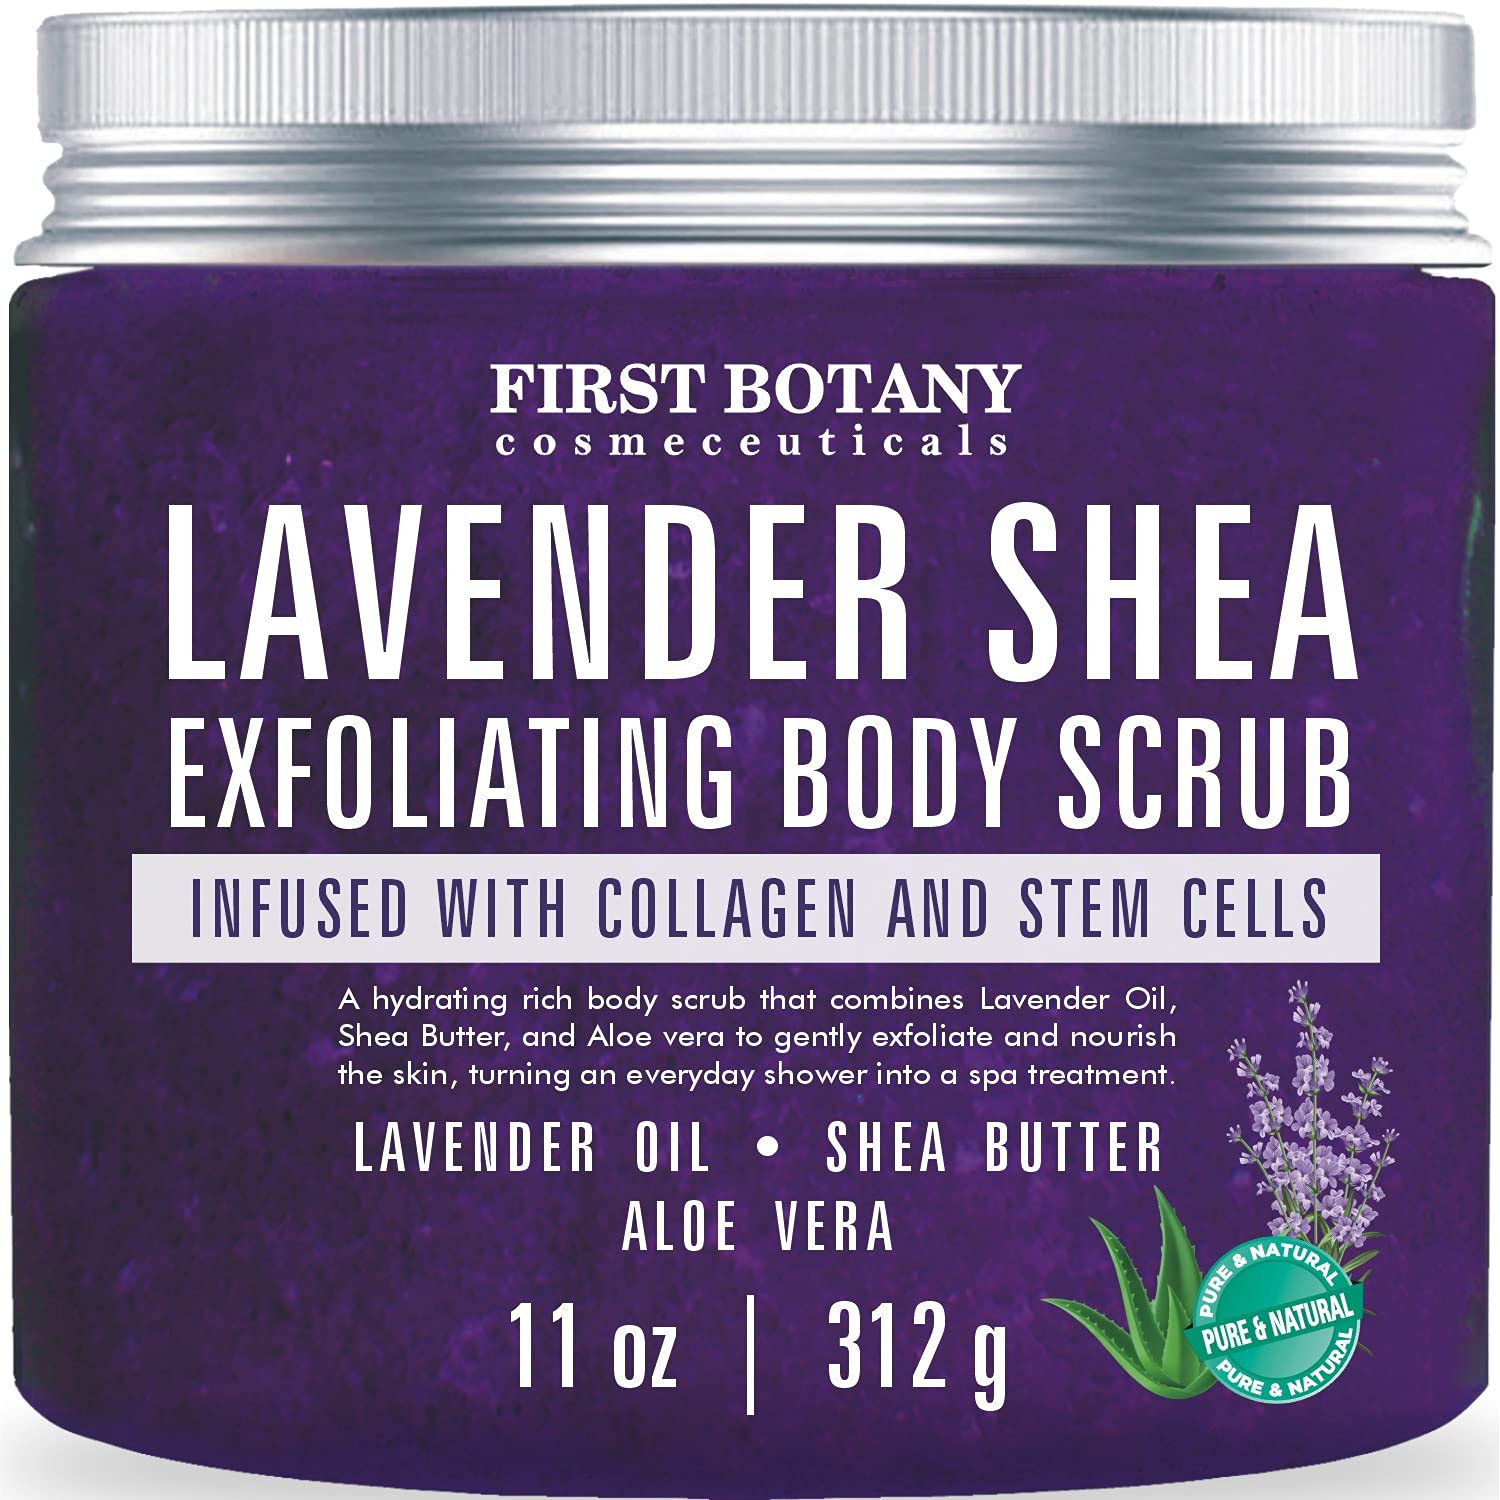  Exfoliating Body Scrub - Pure Dead Sea Salt Scrub for